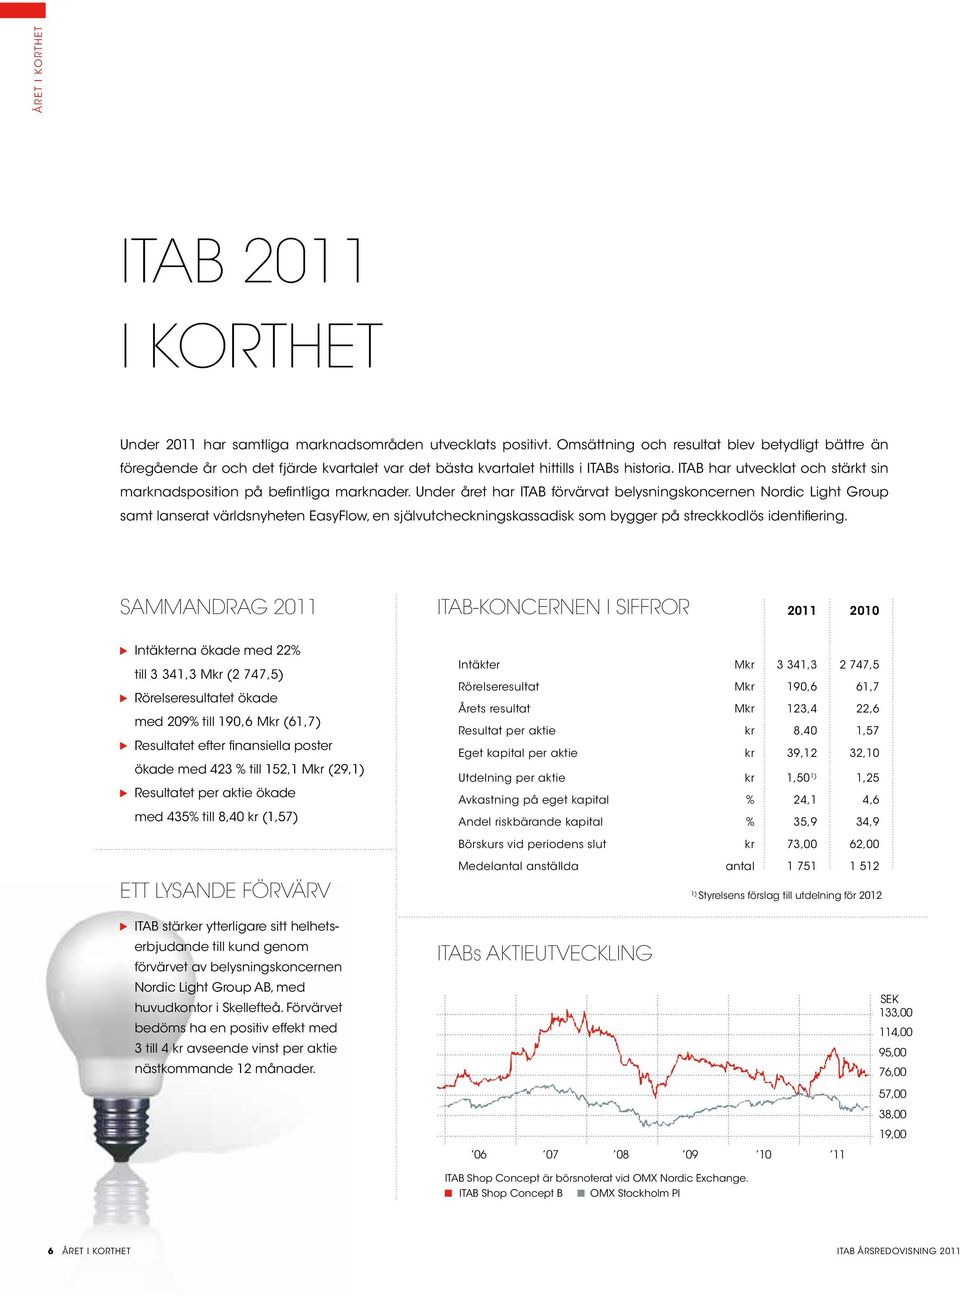 ITAB har utvecklat och stärkt sin marknadsposition på befintliga marknader.